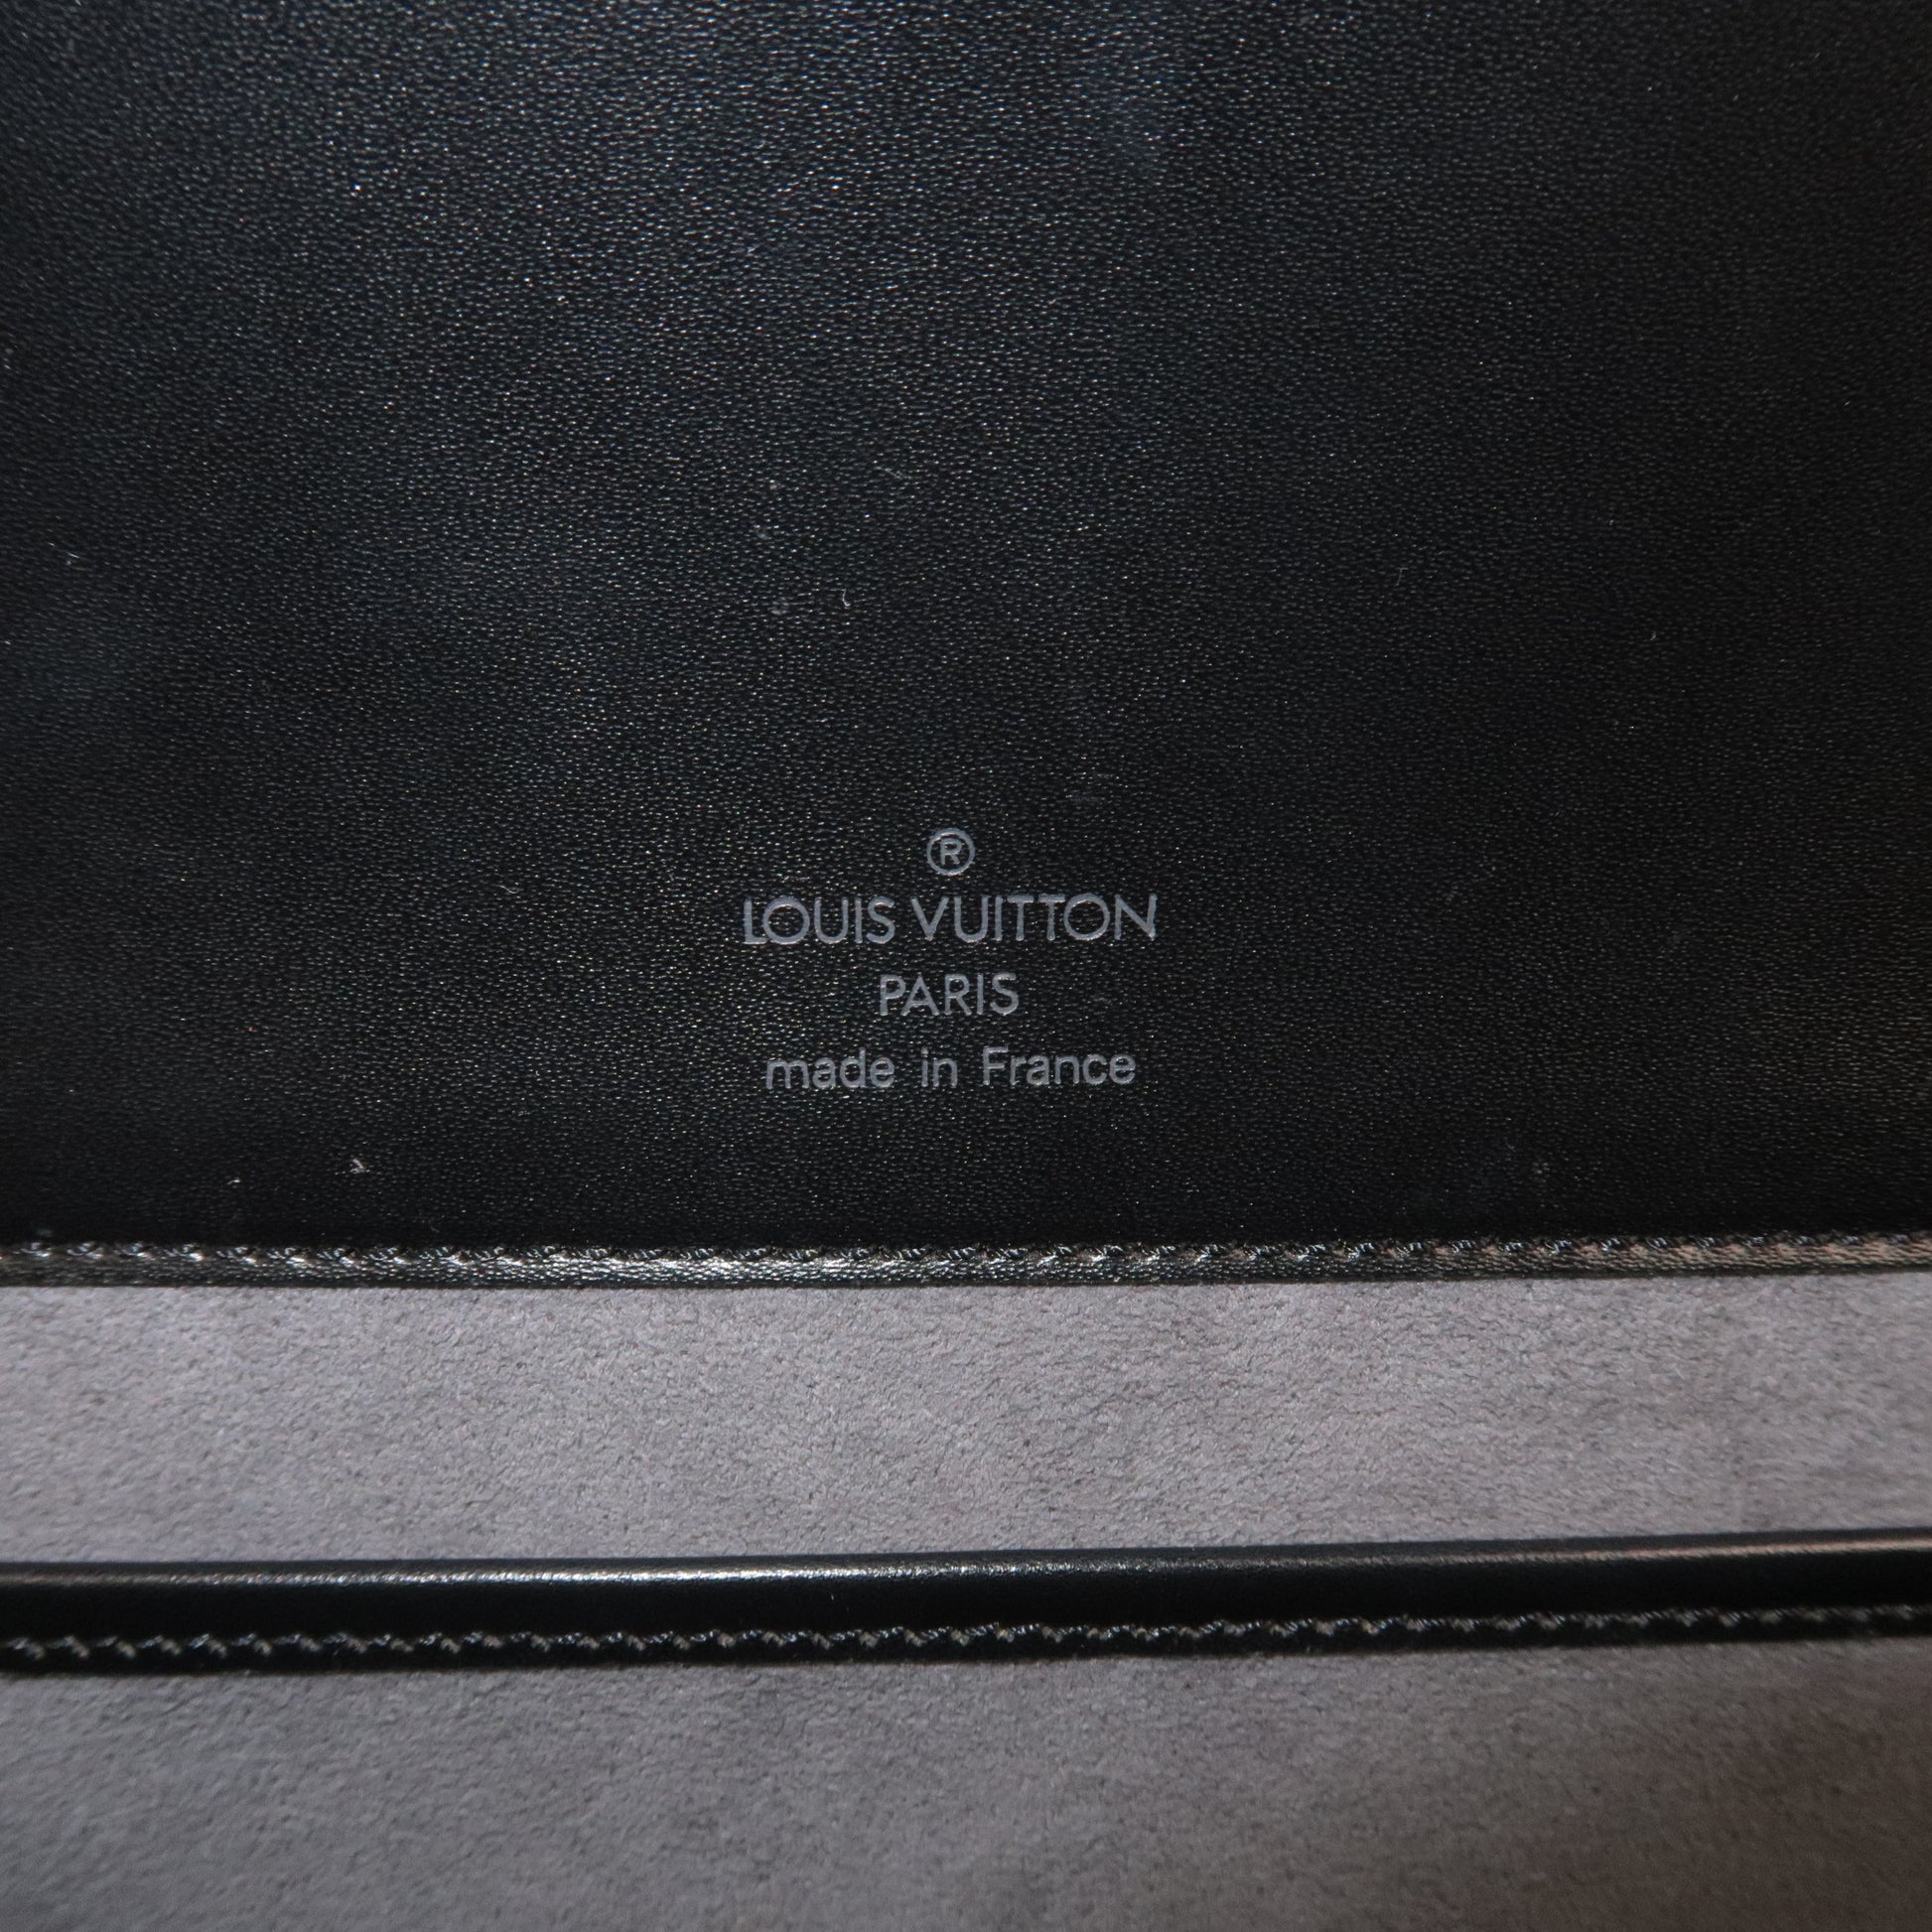 Louis Vuitton Louis Vuitton Nocturne GM Black Epi Leather Shoulder